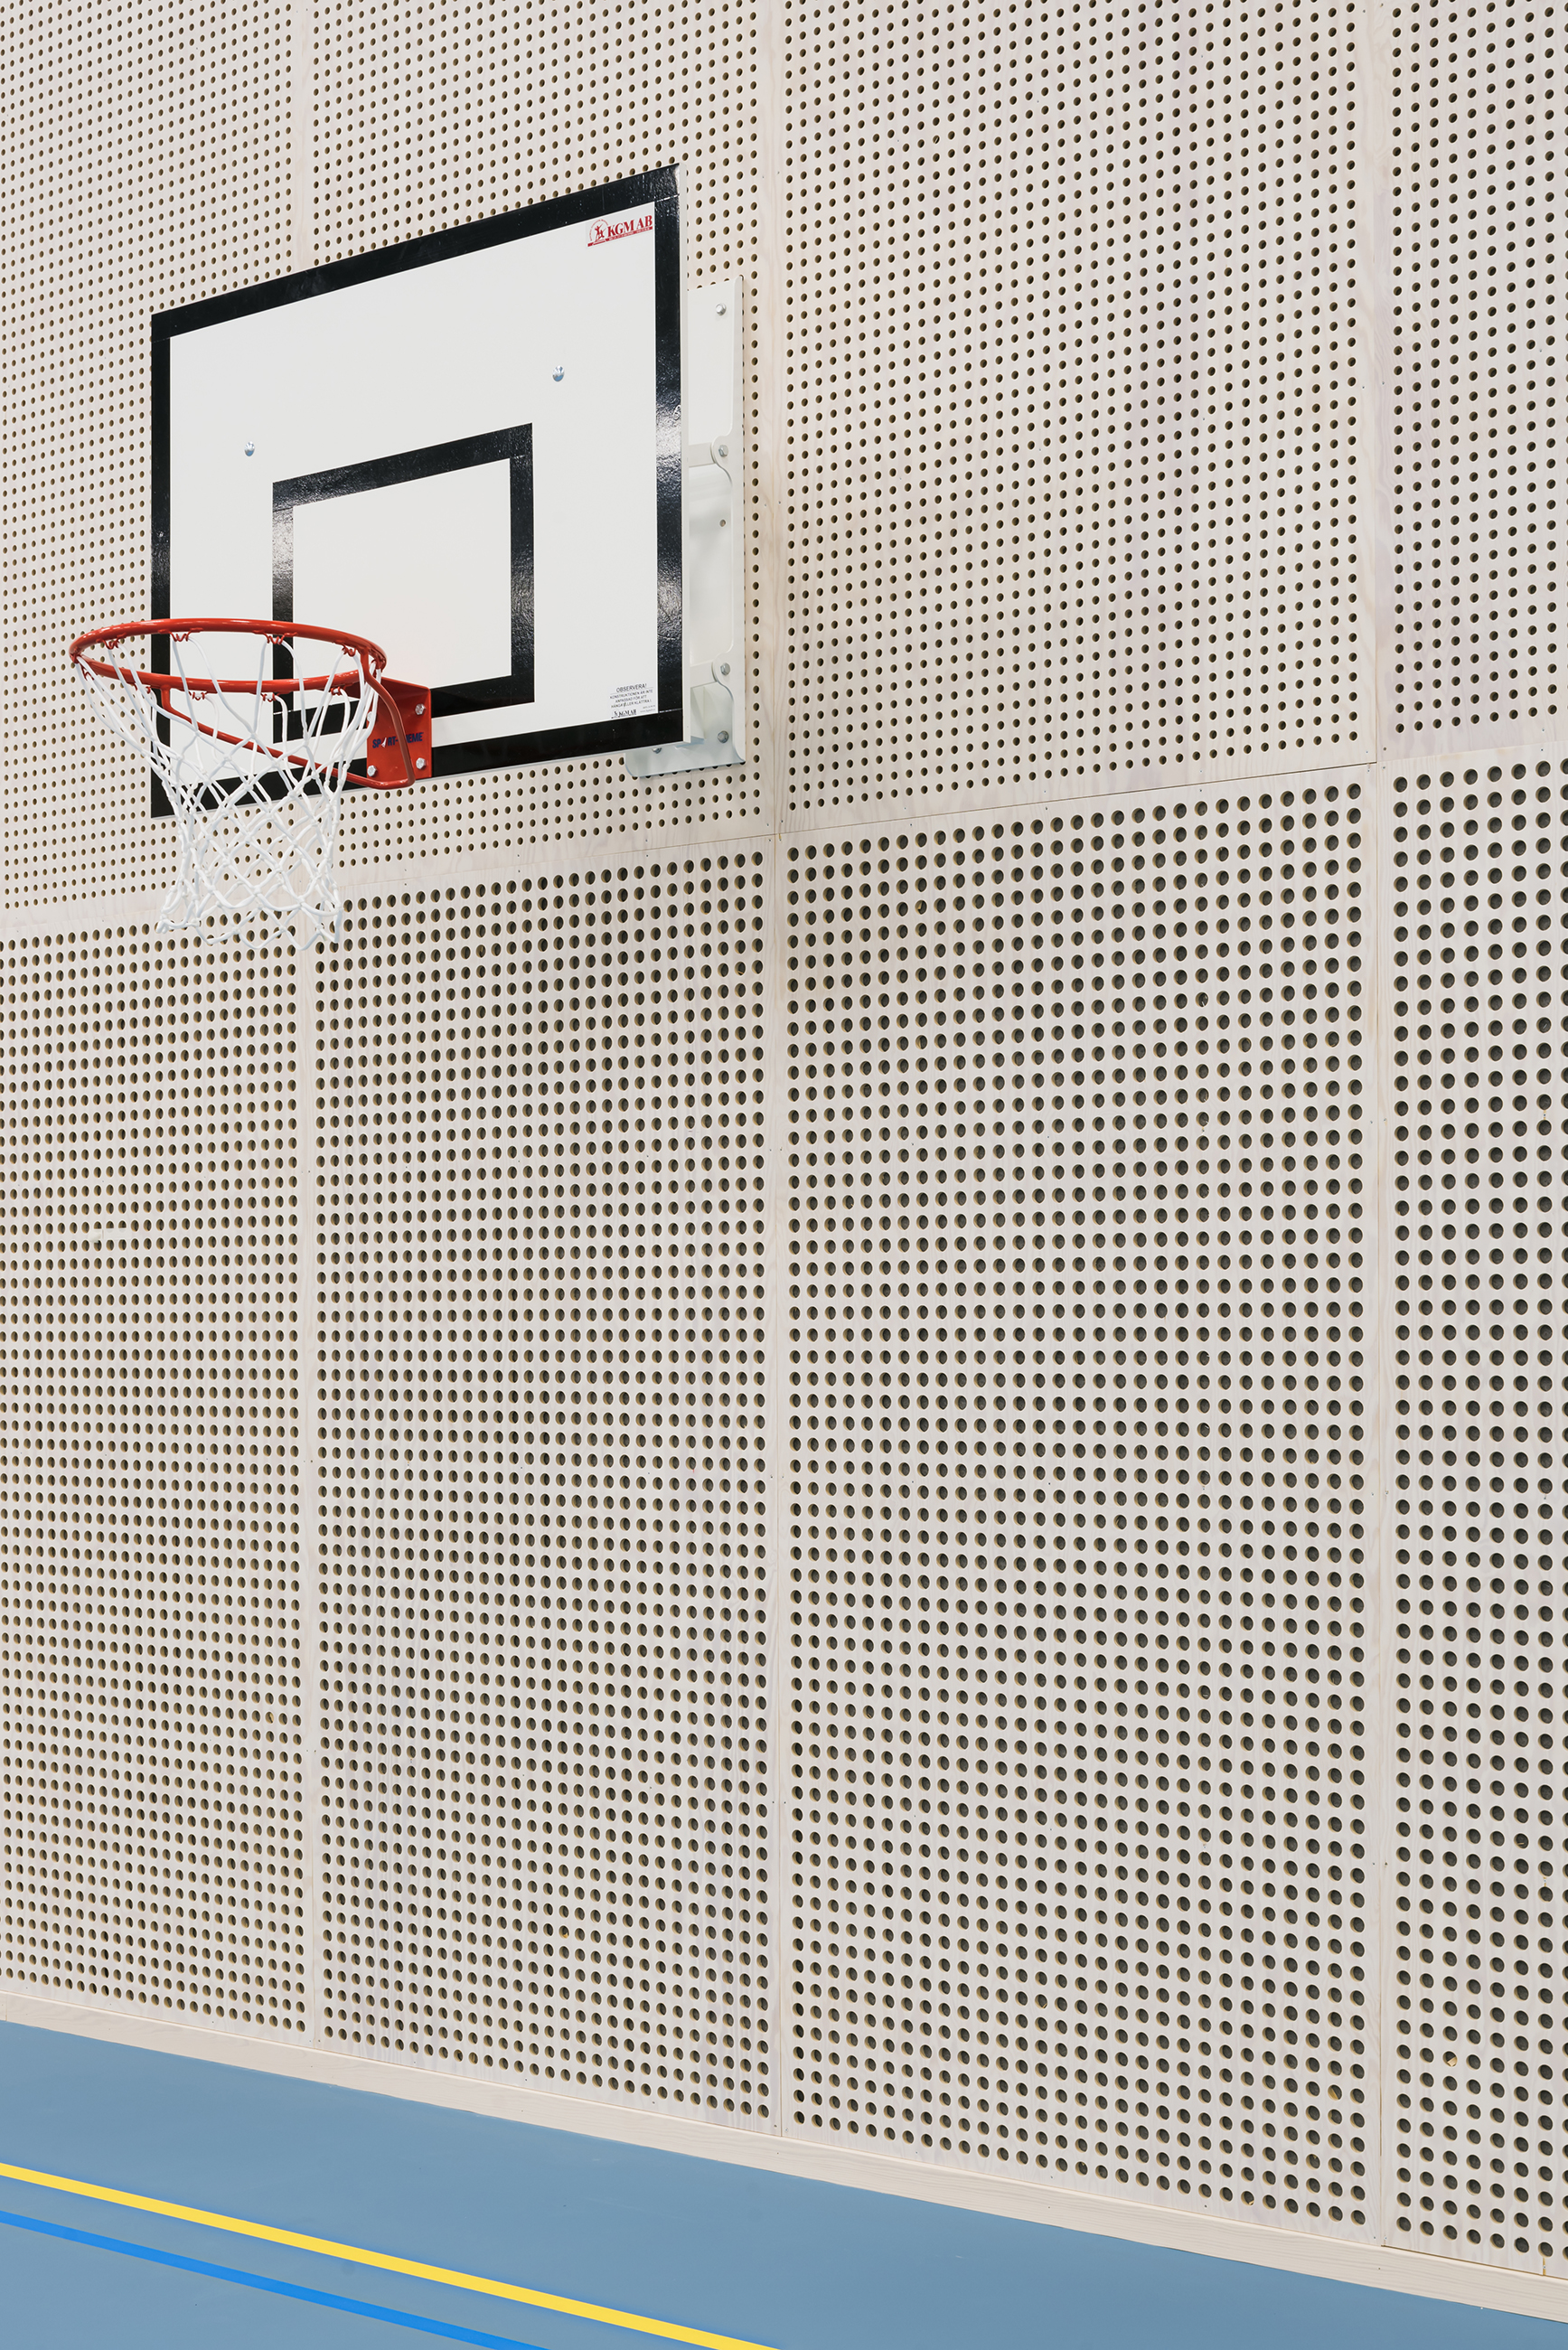 Perforerede træpaneler på væg og basketballkurv